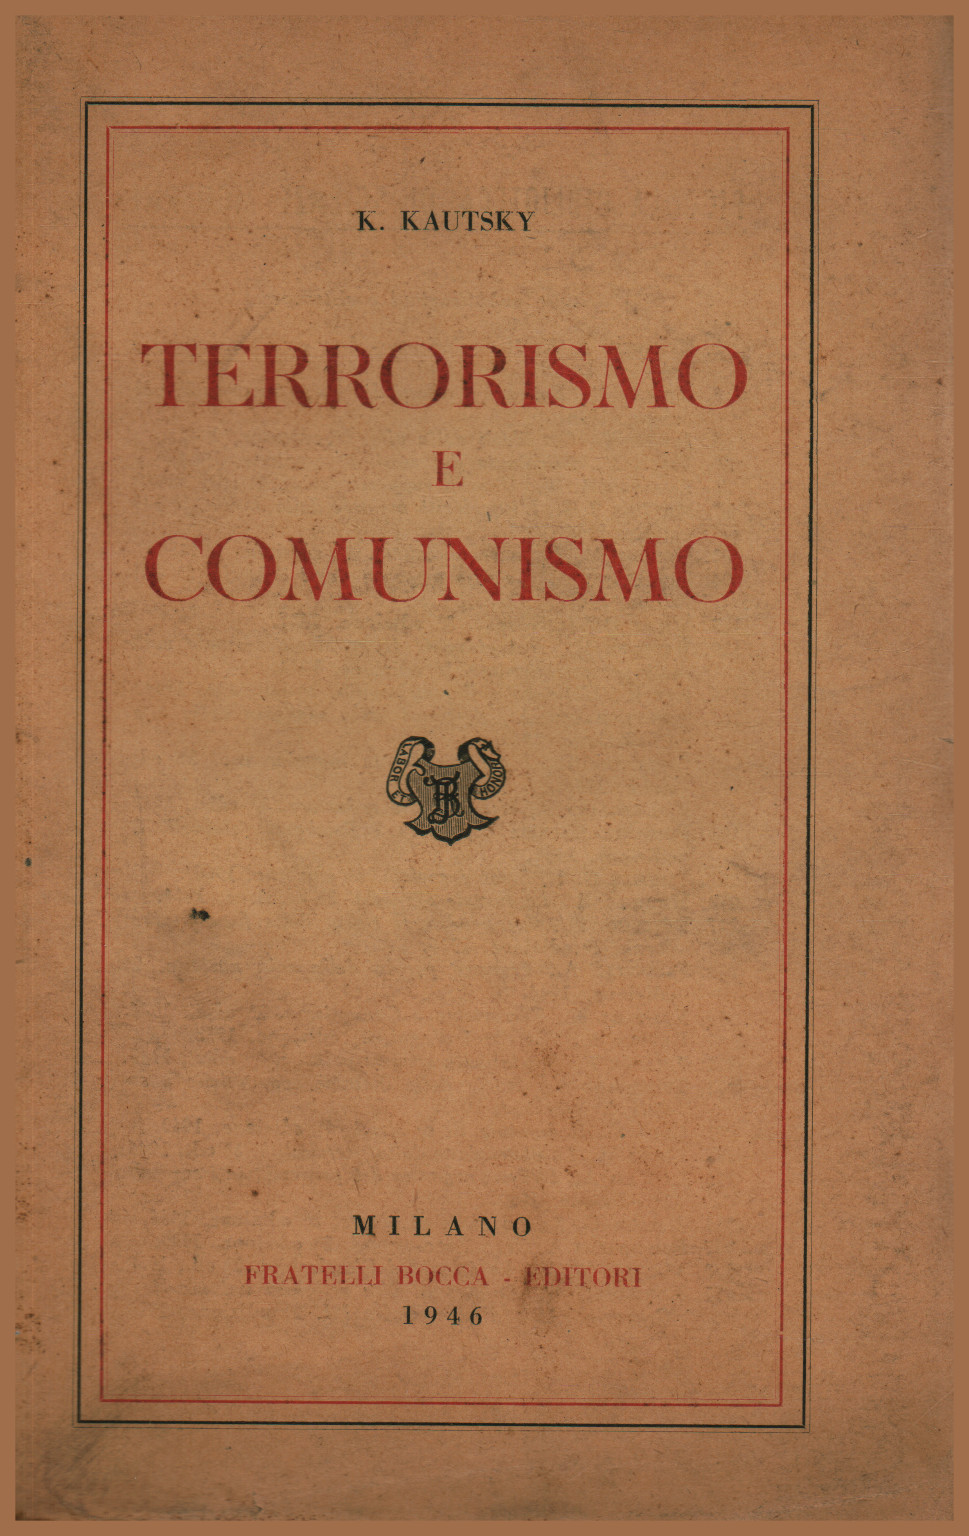 Terrorismo e comunismo, s.a.